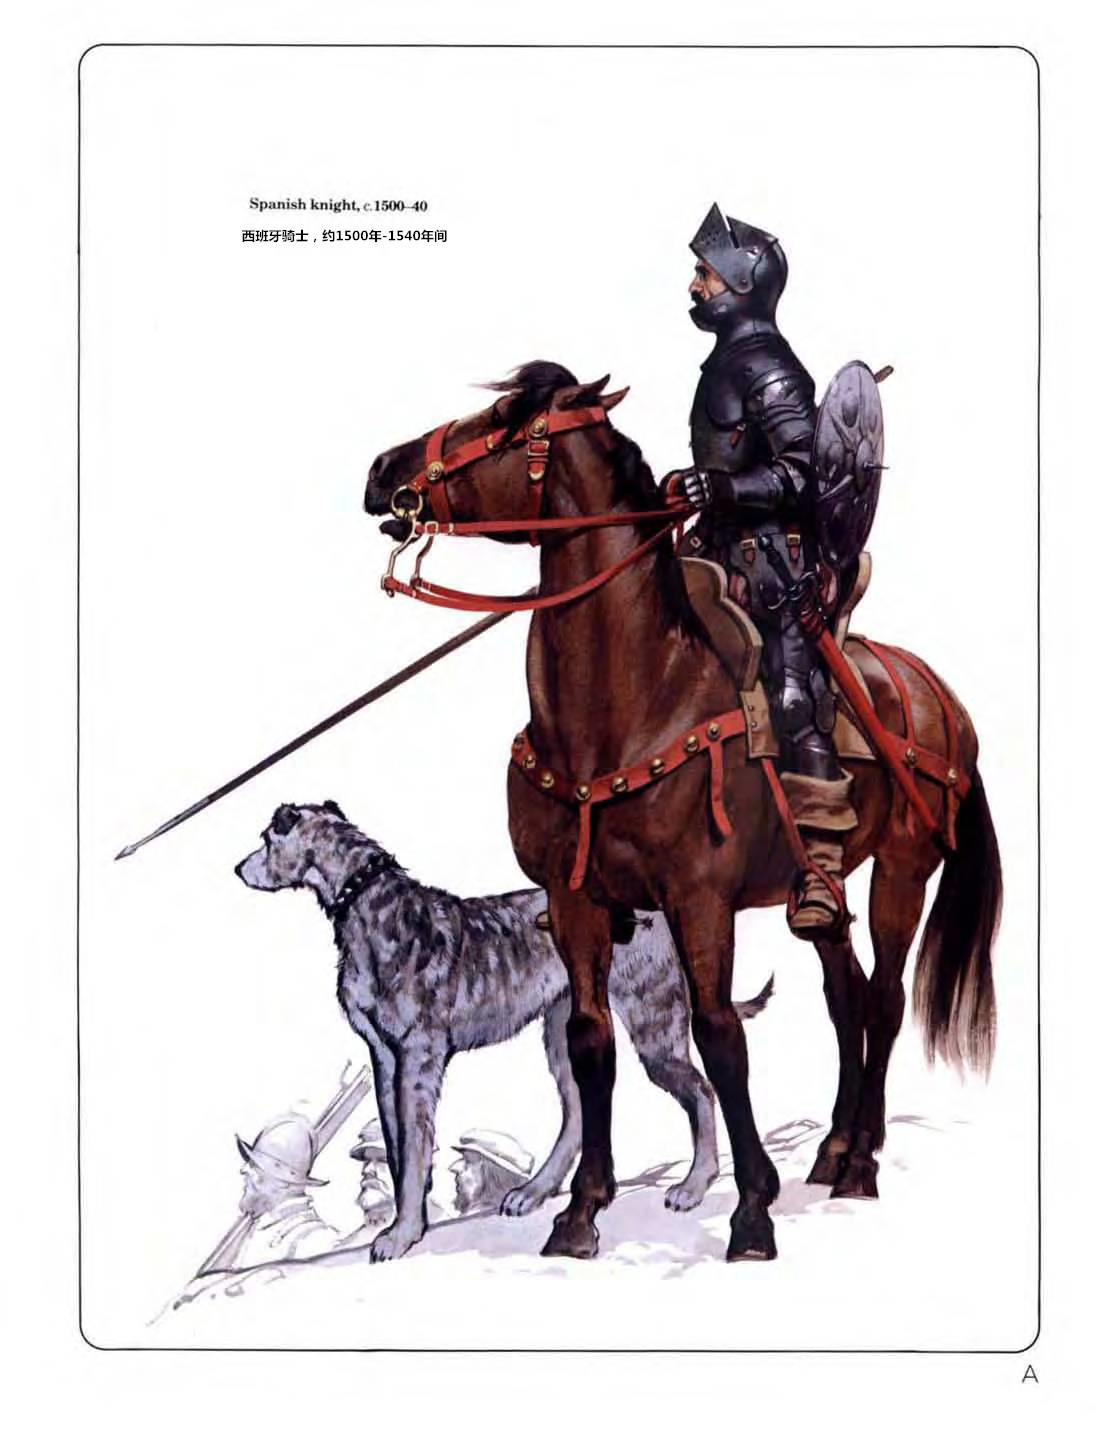 西班牙騎士，約1500年-1540年間